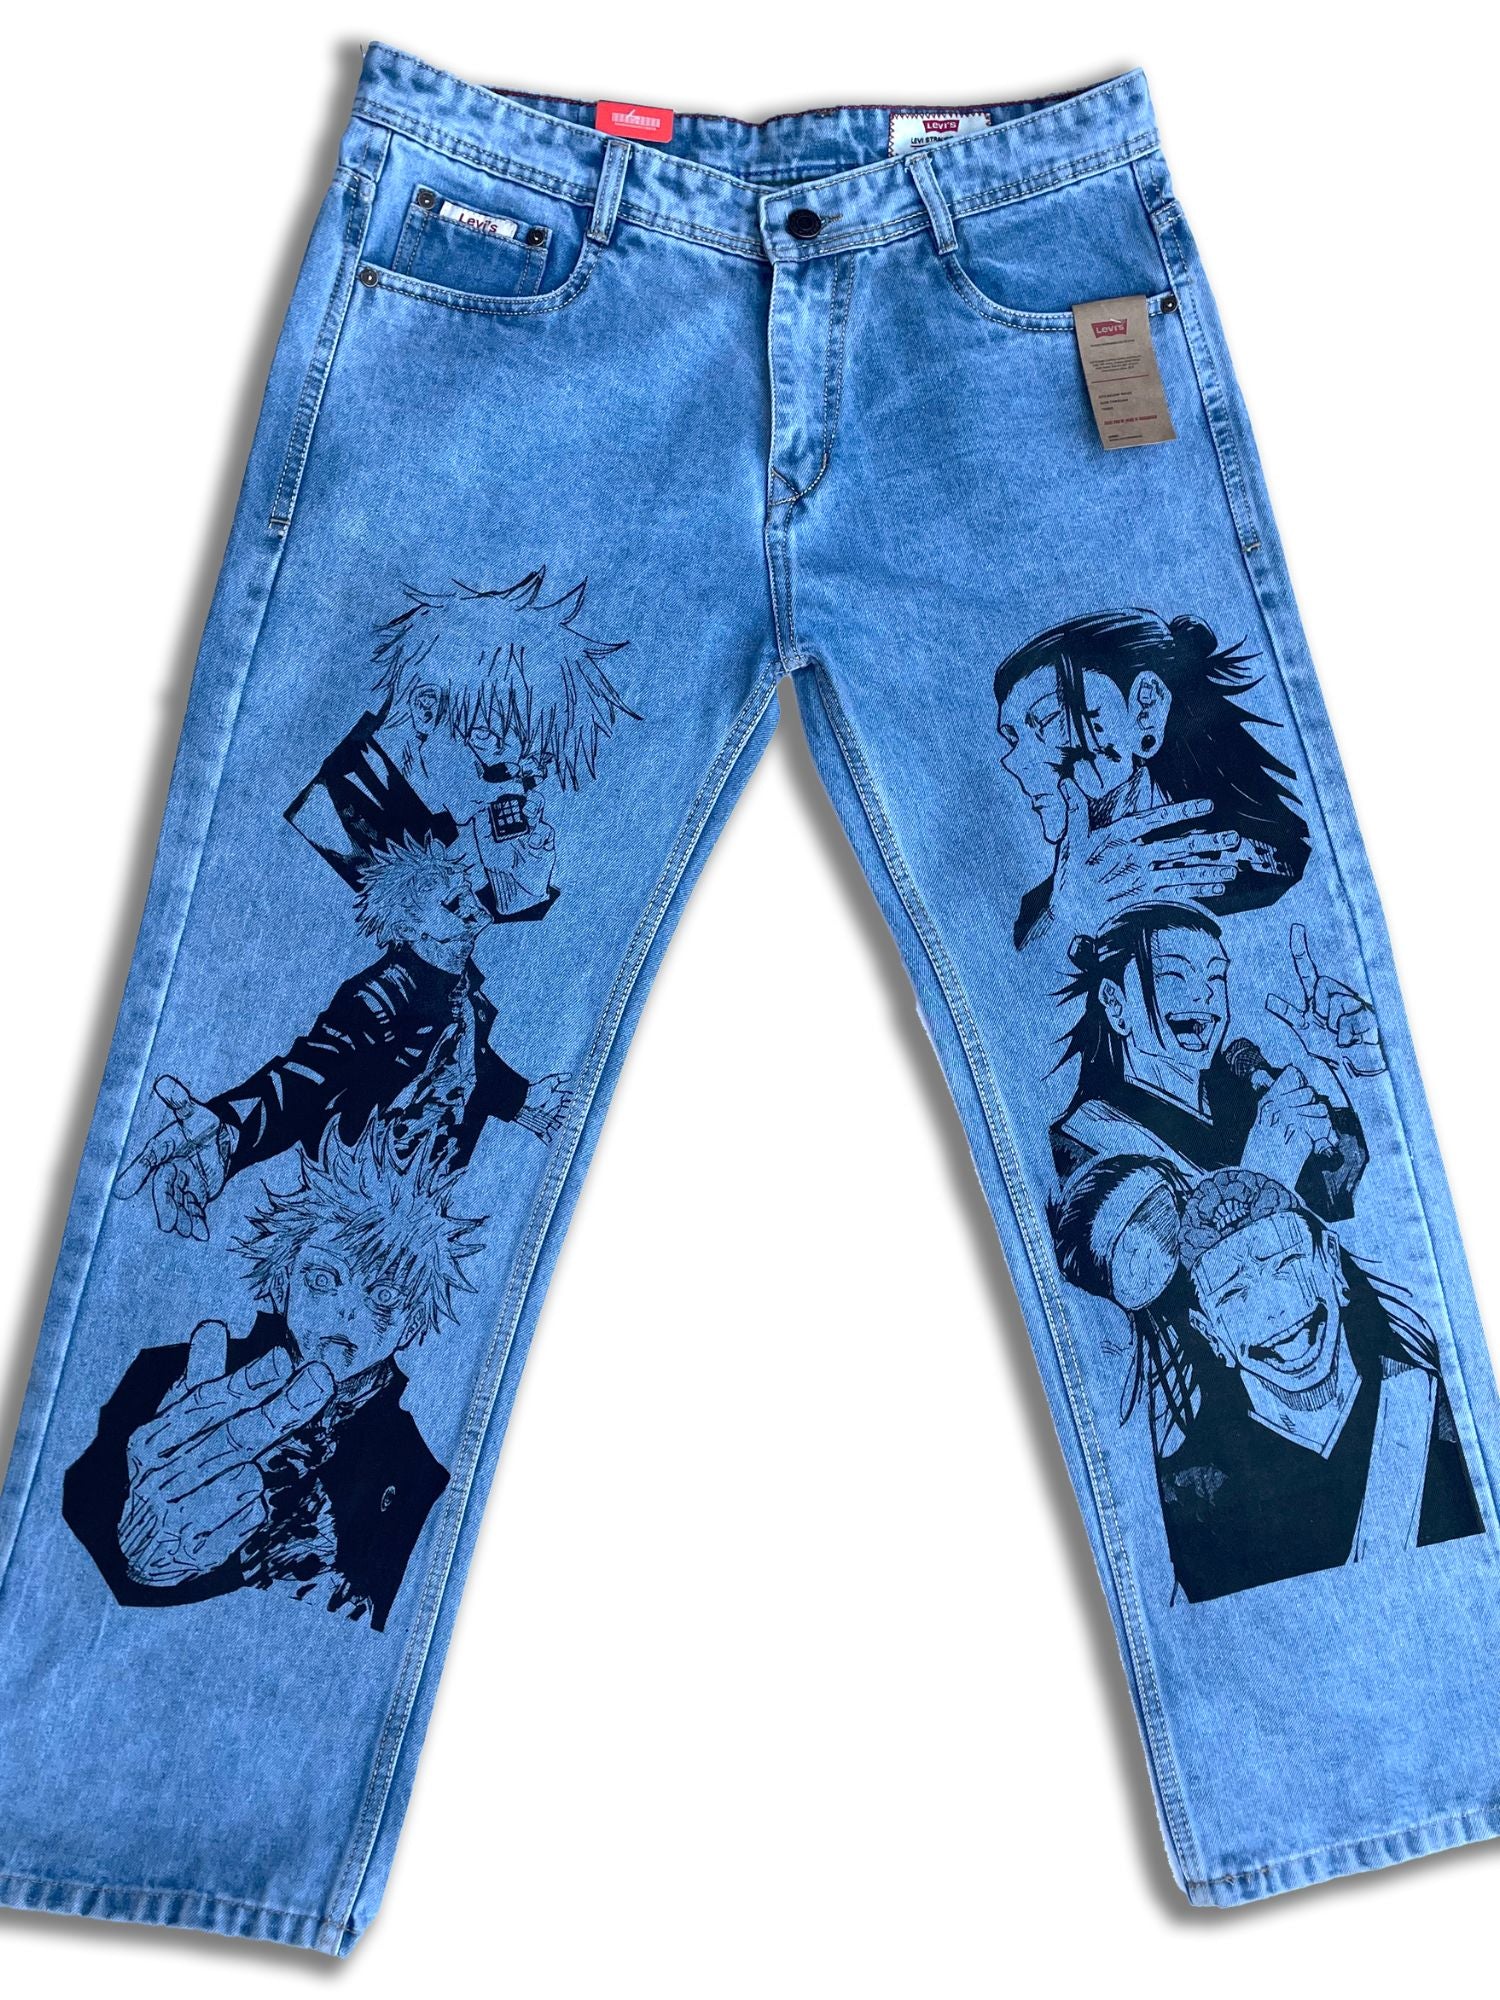 Gojo x Geto: Printed Jujutsu Kaisen Blue Denim Jeans